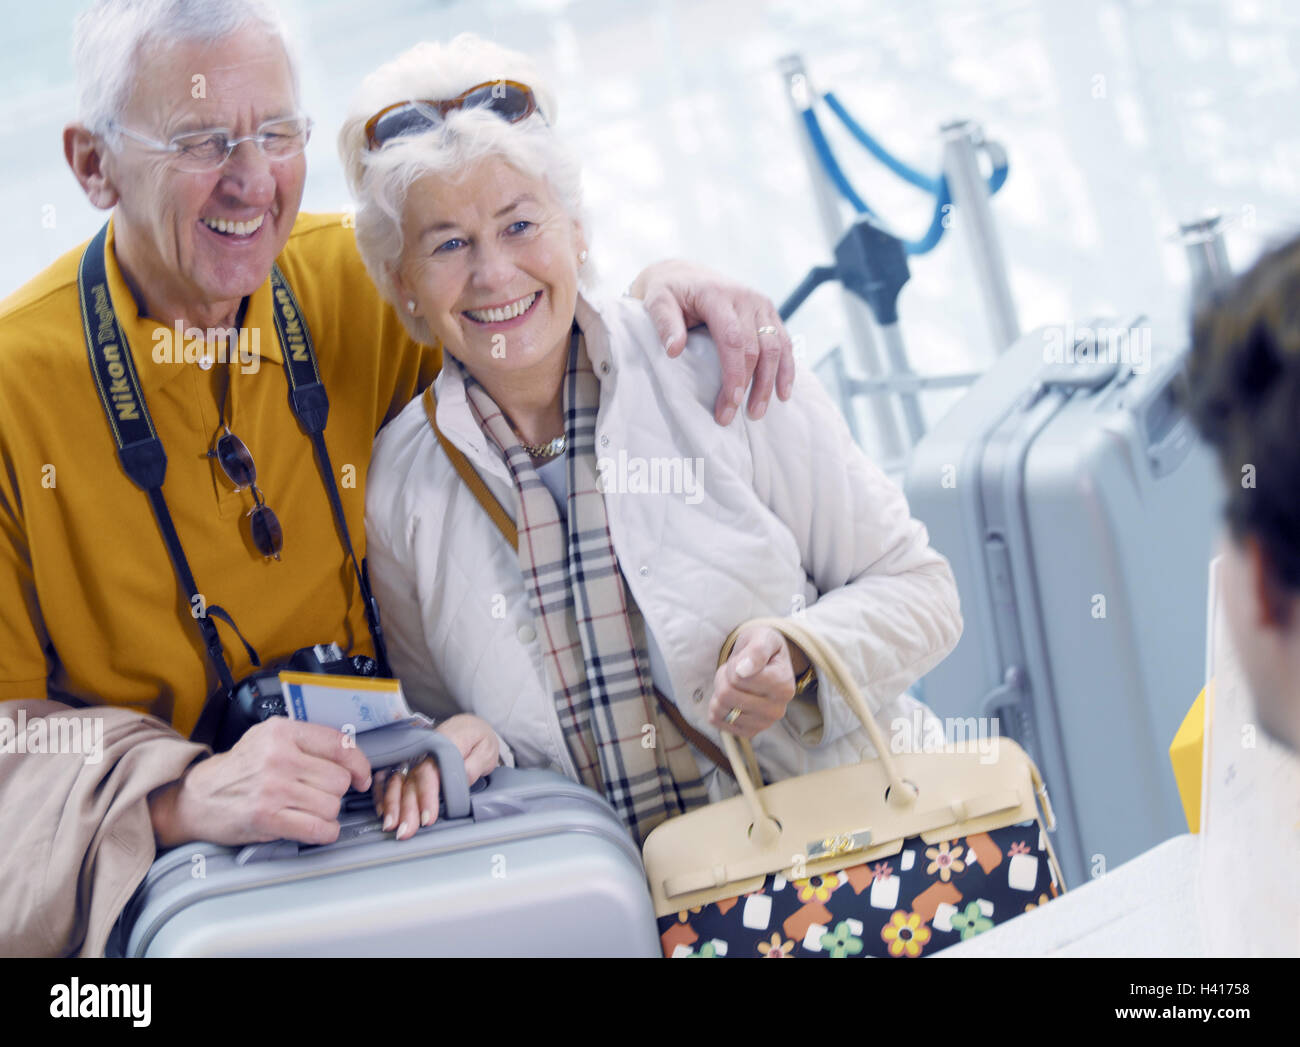 Aeropuerto, interruptor, trabajador de oficina, el detalle, la pareja de ancianos, check in, reír, informar el check in, el personal, el hombre, la tierra, el detalle de la tripulación, la pareja, los ancianos, los pasajeros, los pasajeros de las líneas aéreas, la asociación, las parejas casadas, la tercera edad, la mejor de todas las edades, turistas, información, afortunadamente, la alegría, el arroz, el viaje por aire, viajes al extranjero, vacaciones, vacaciones, viajes, volar, la alegría de la vida, iniciativa, montar, ágil, activa, activa, joven, los viajes restantes instar, turismo, estilo de vida, tuning positivamente Foto de stock